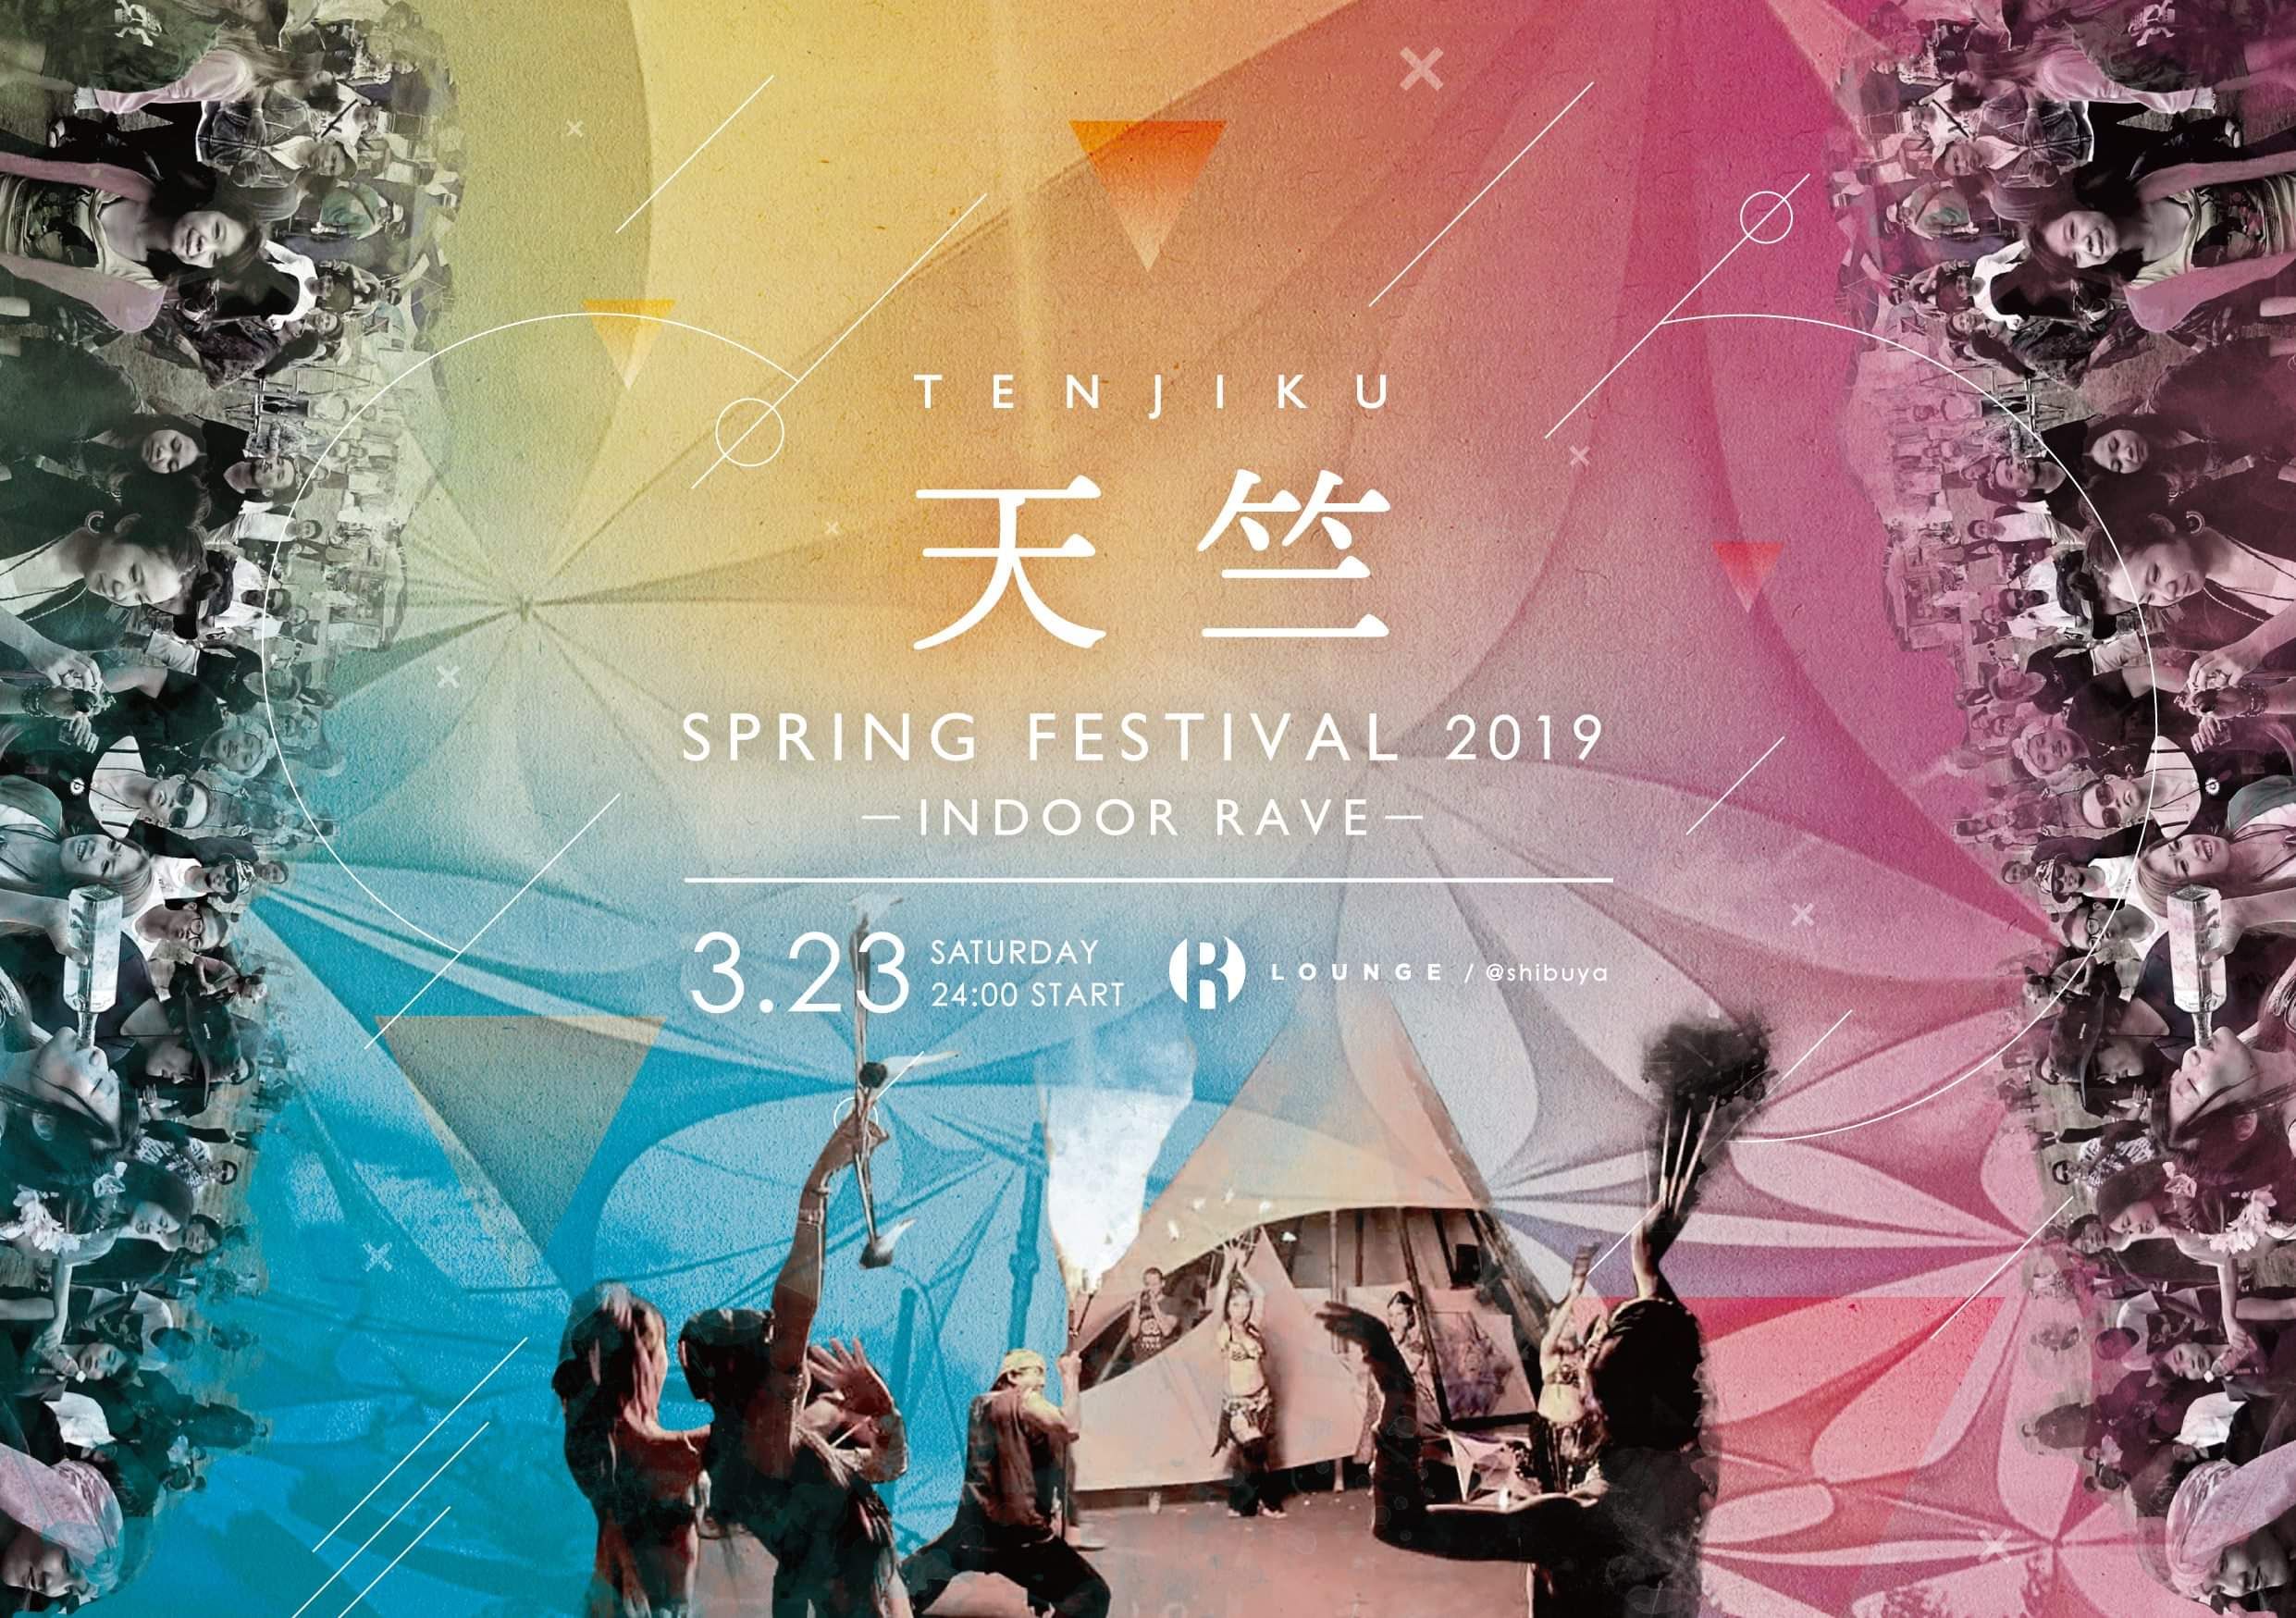 天竺 Spring Festival 2019－Indoor RAVE－